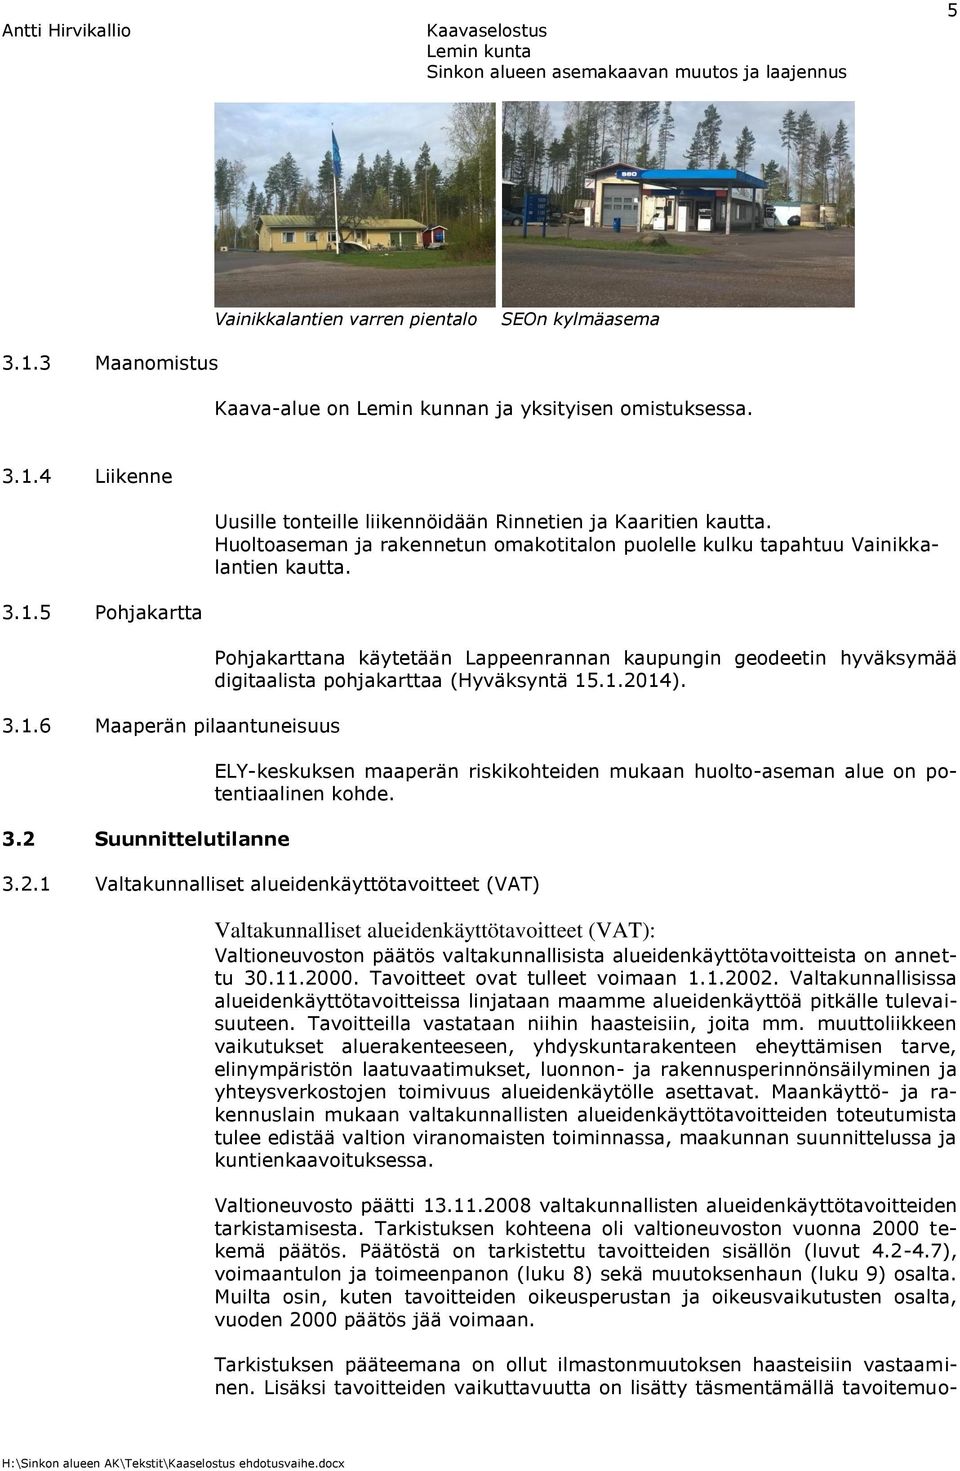 Pohjakarttana käytetään Lappeenrannan kaupungin geodeetin hyväksymää digitaalista pohjakarttaa (Hyväksyntä 15.1.2014).